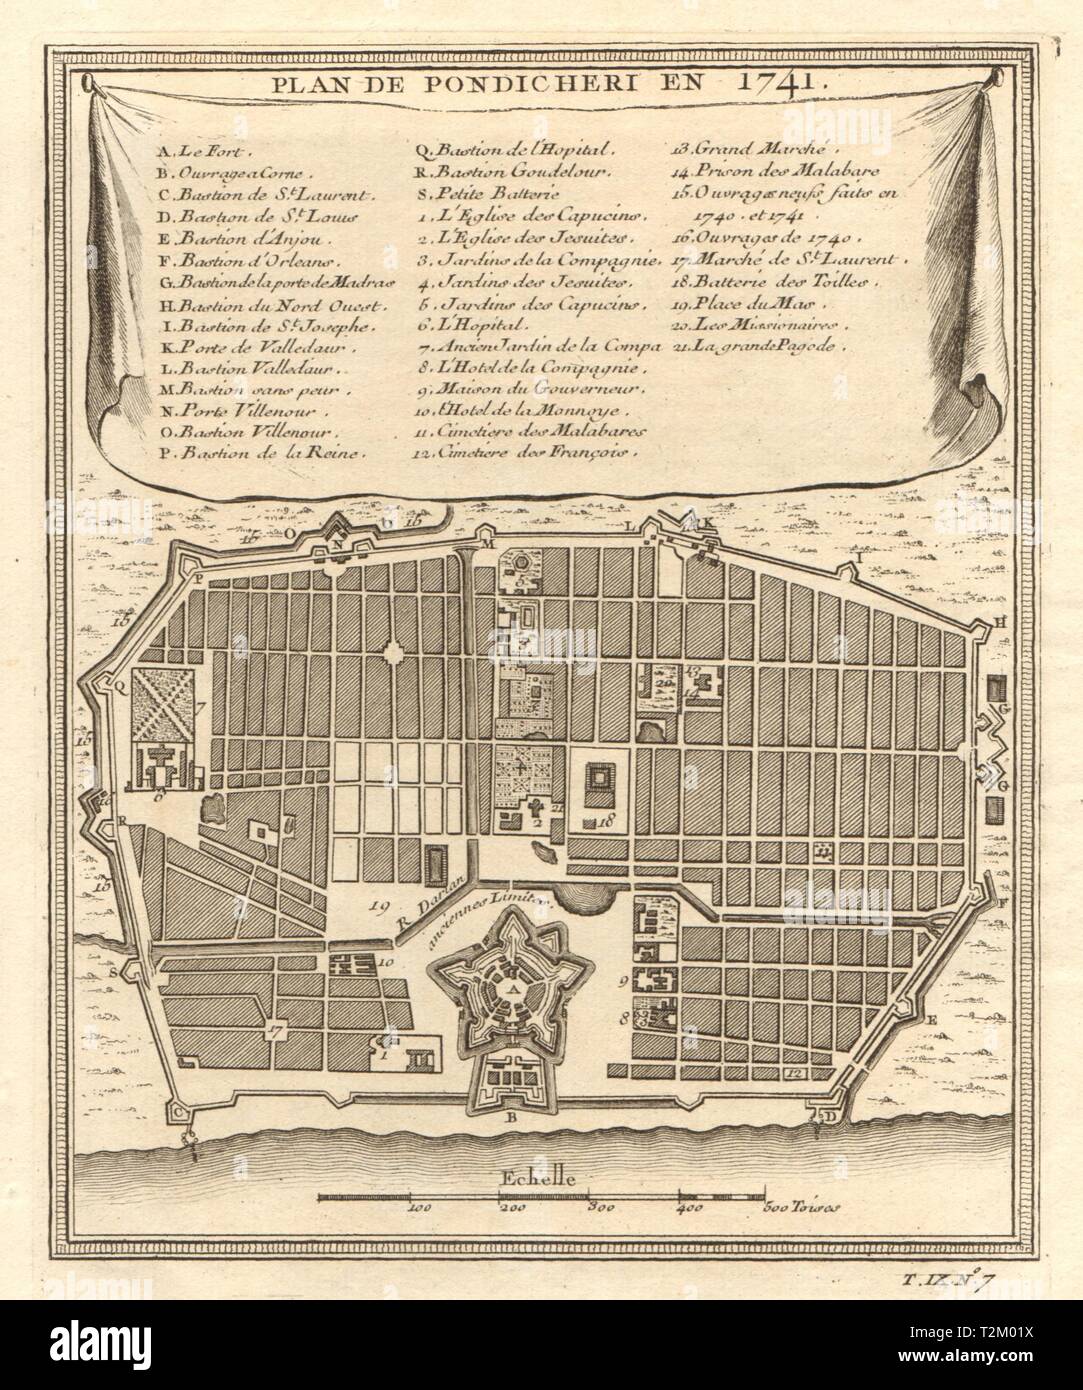 Plan De Pondichery En 1741 Pondicherry Puducherry City Plan Bellin 1751 Map T2M01X 